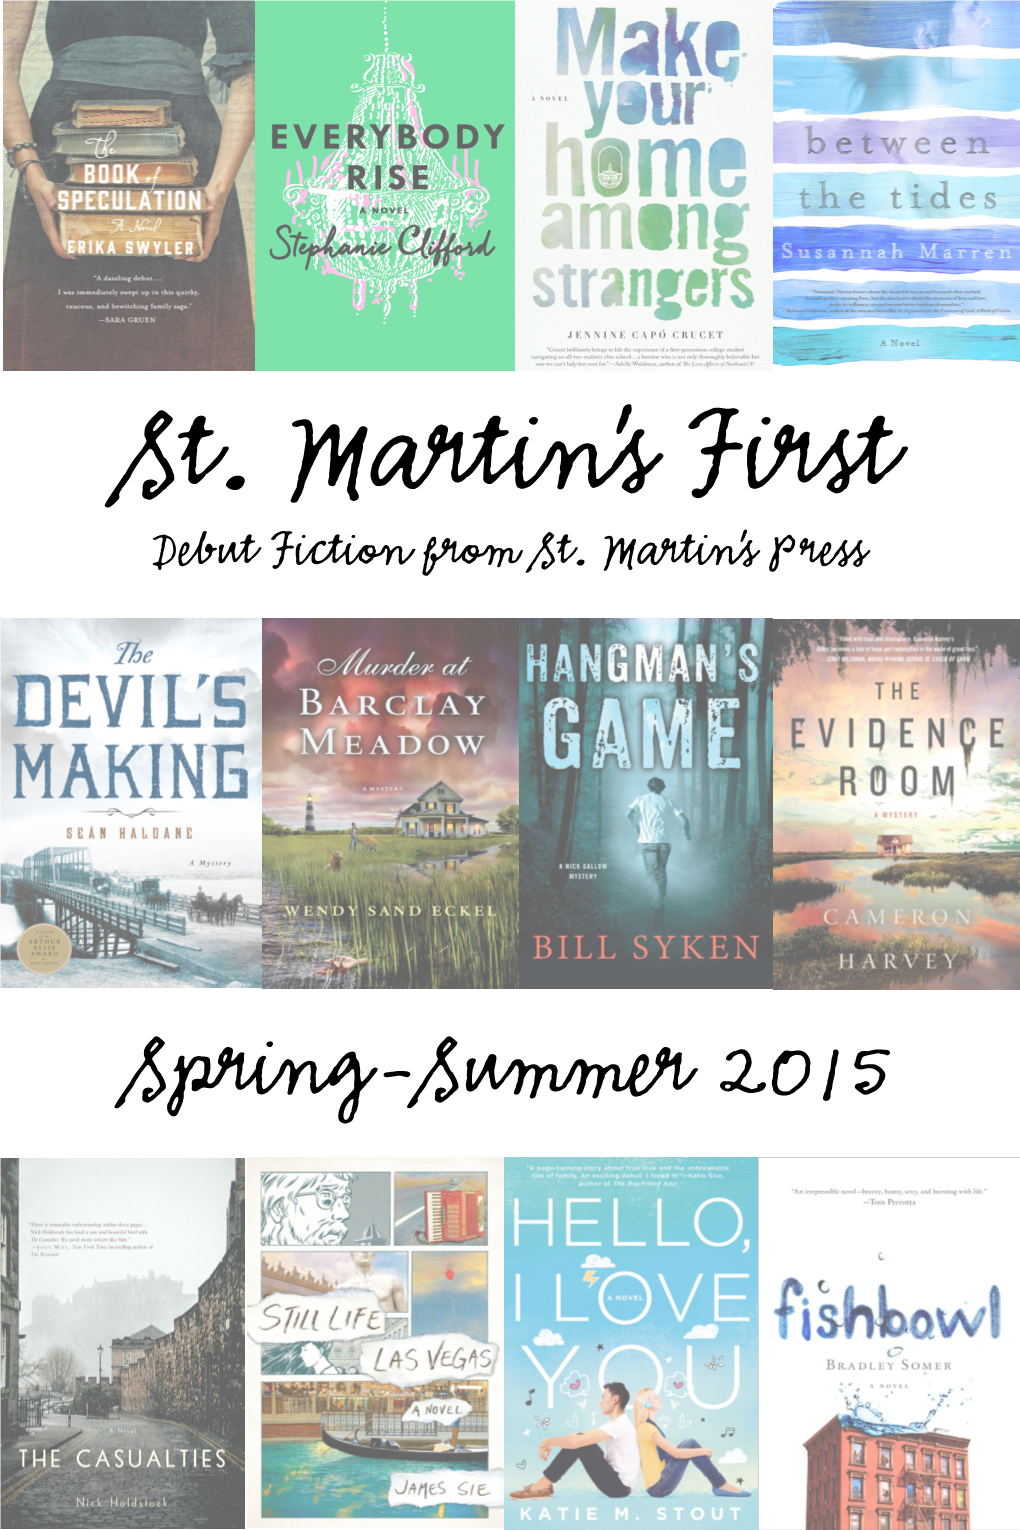 St. Martin's First